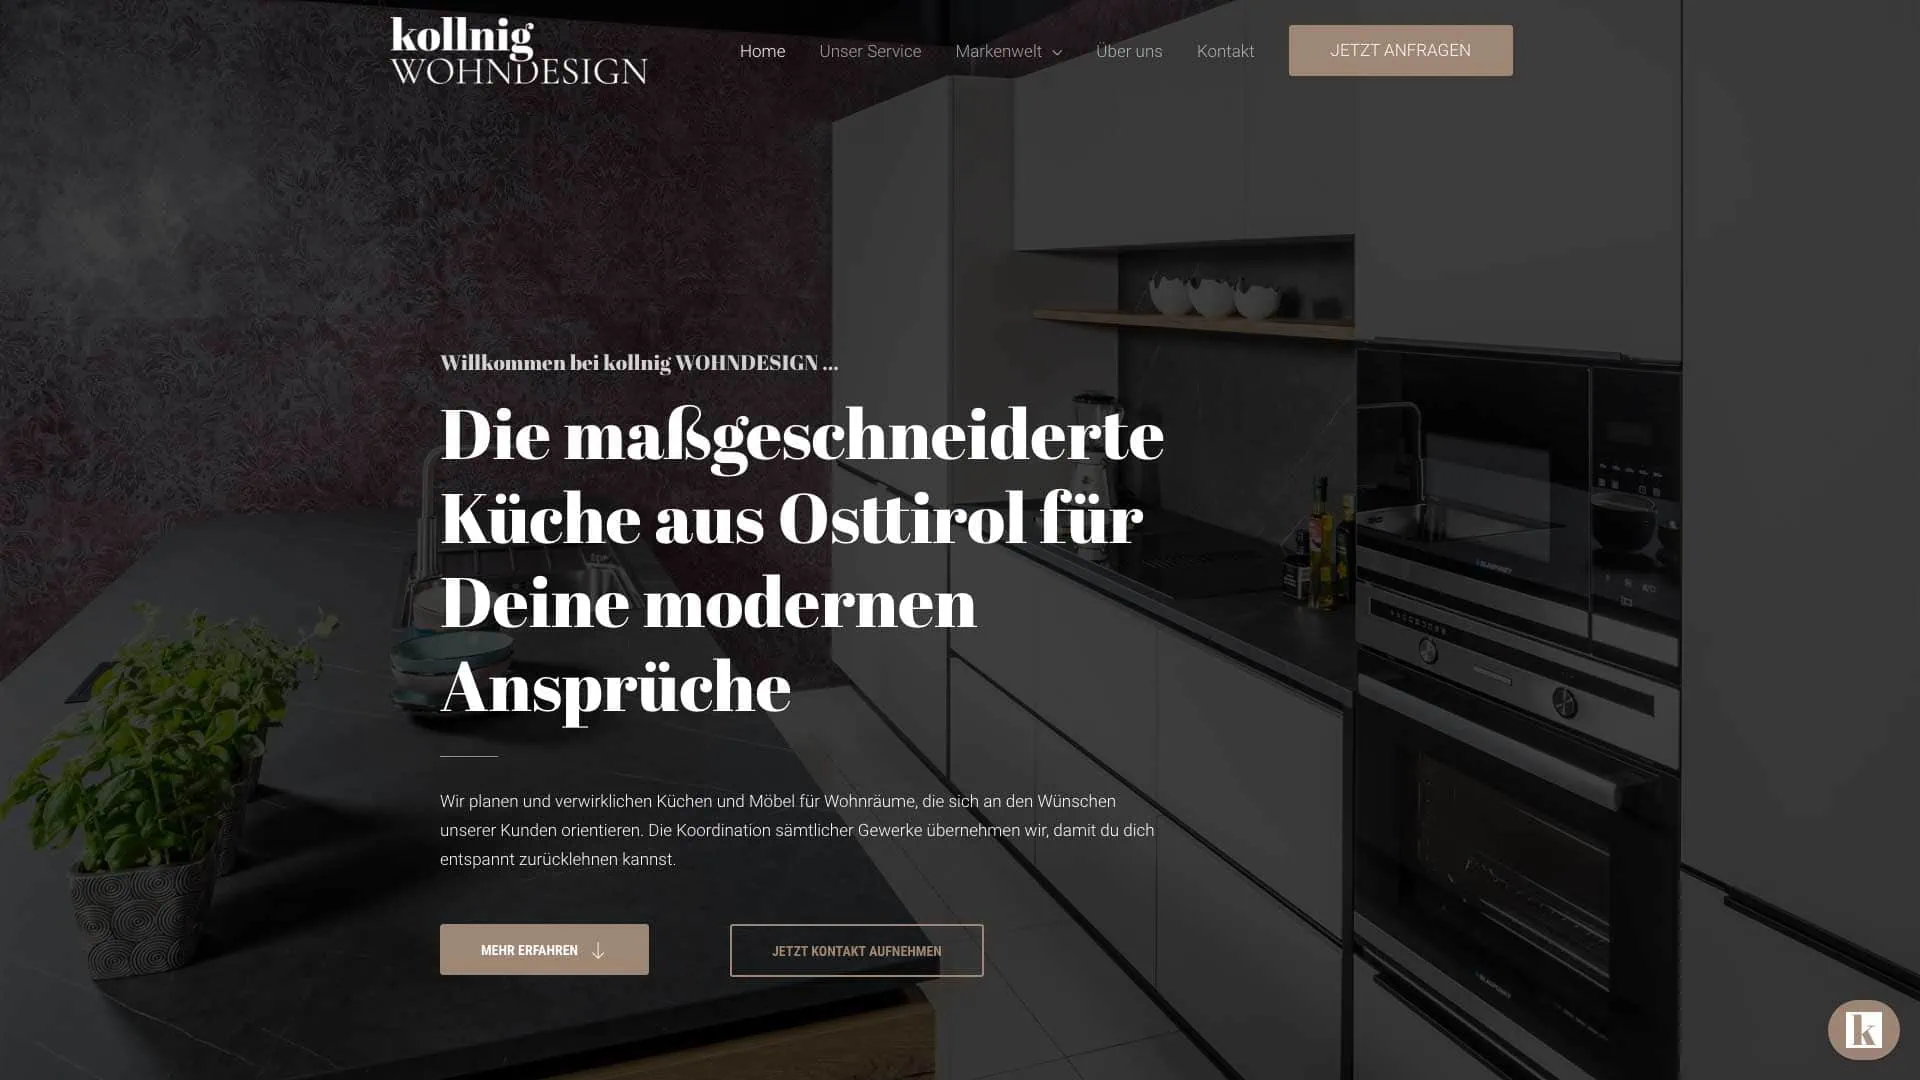 kollnig-WOHNDESIGN-Webdesign-GSALLER-Media-01